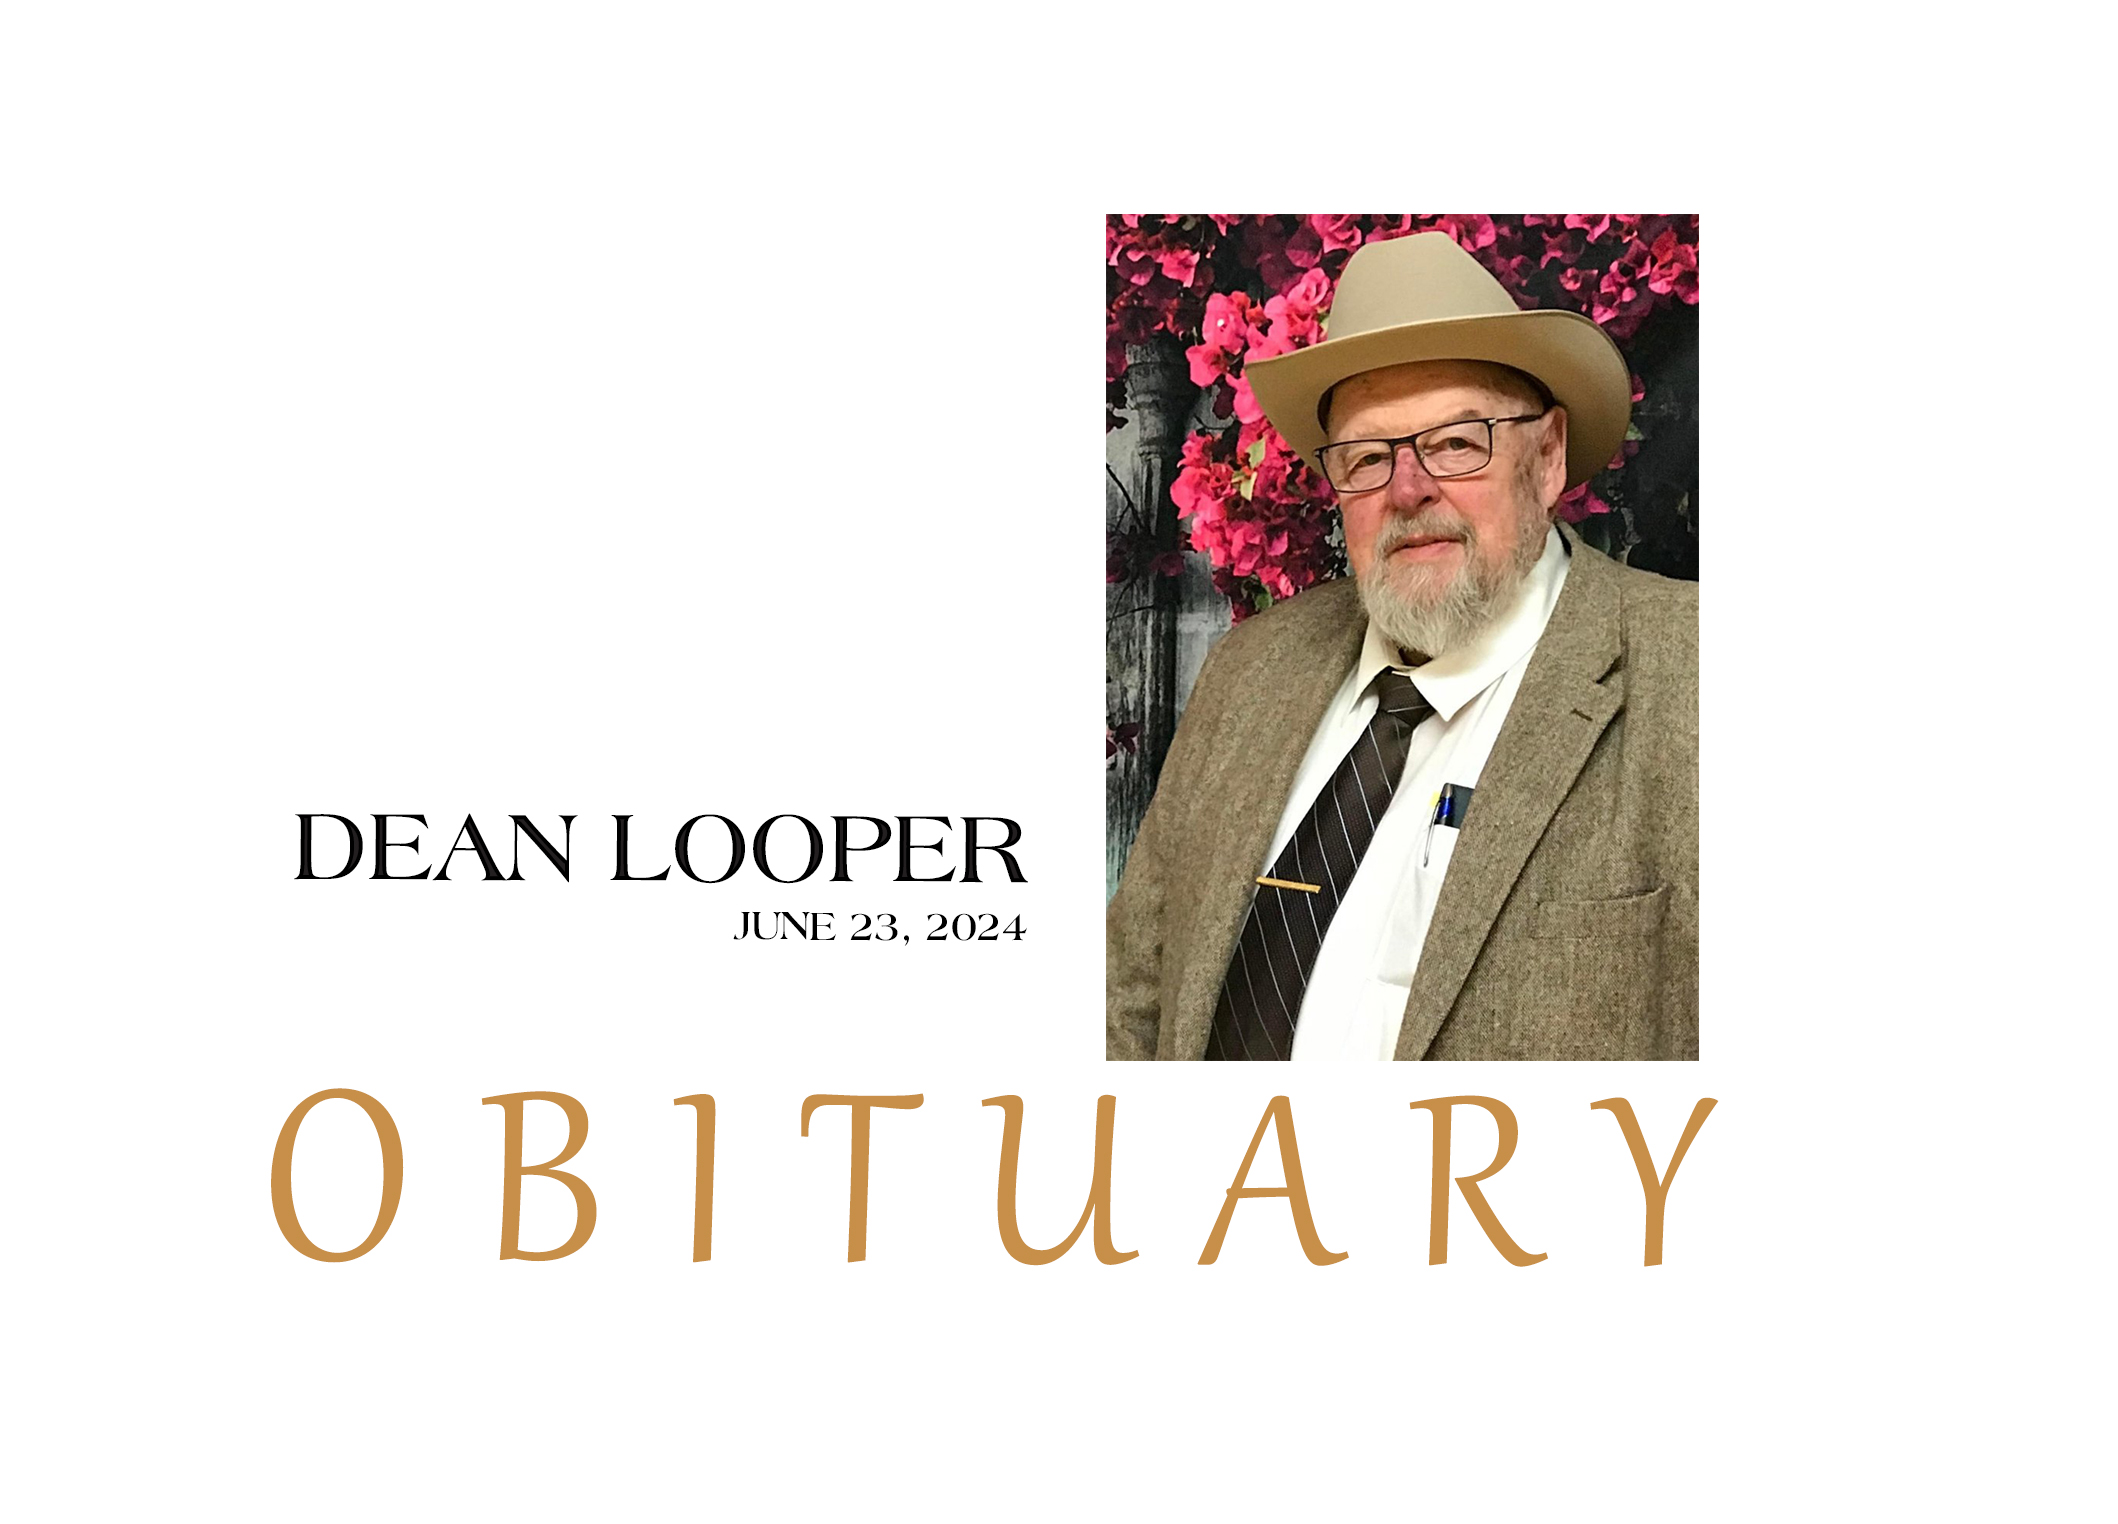 Dean Looper